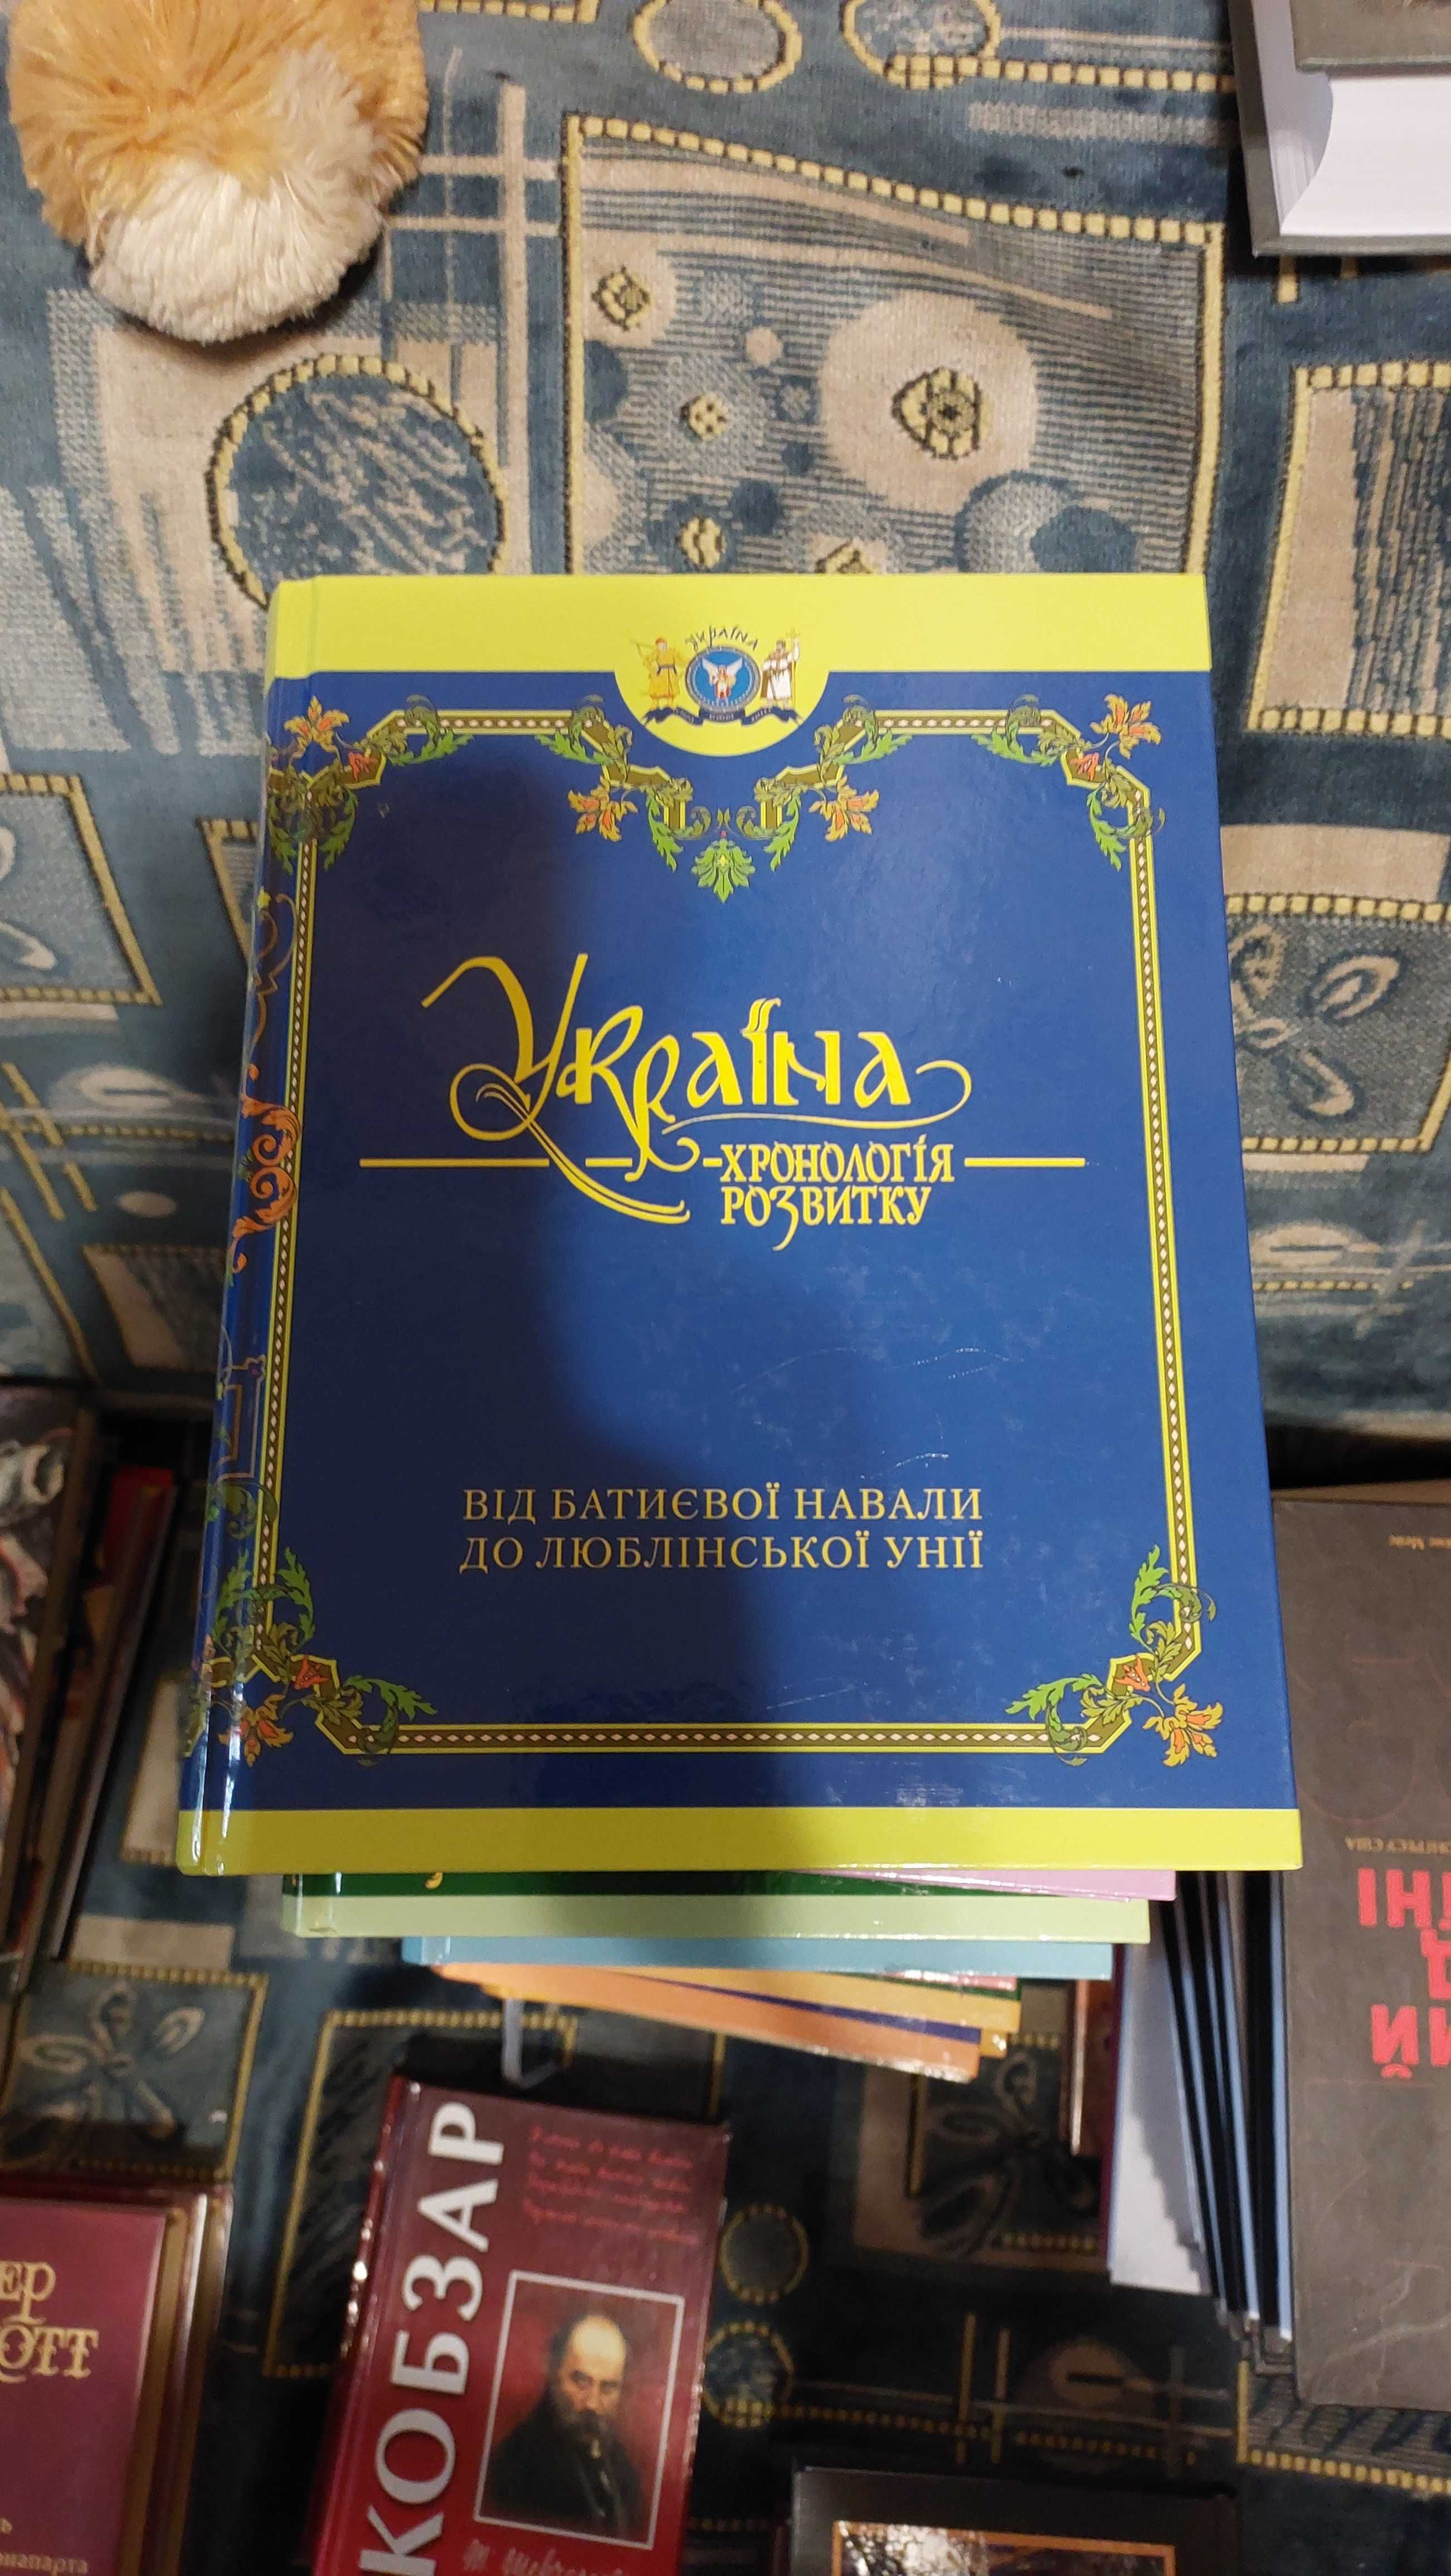 Продам збірку "Україна - хронологія розвитку"